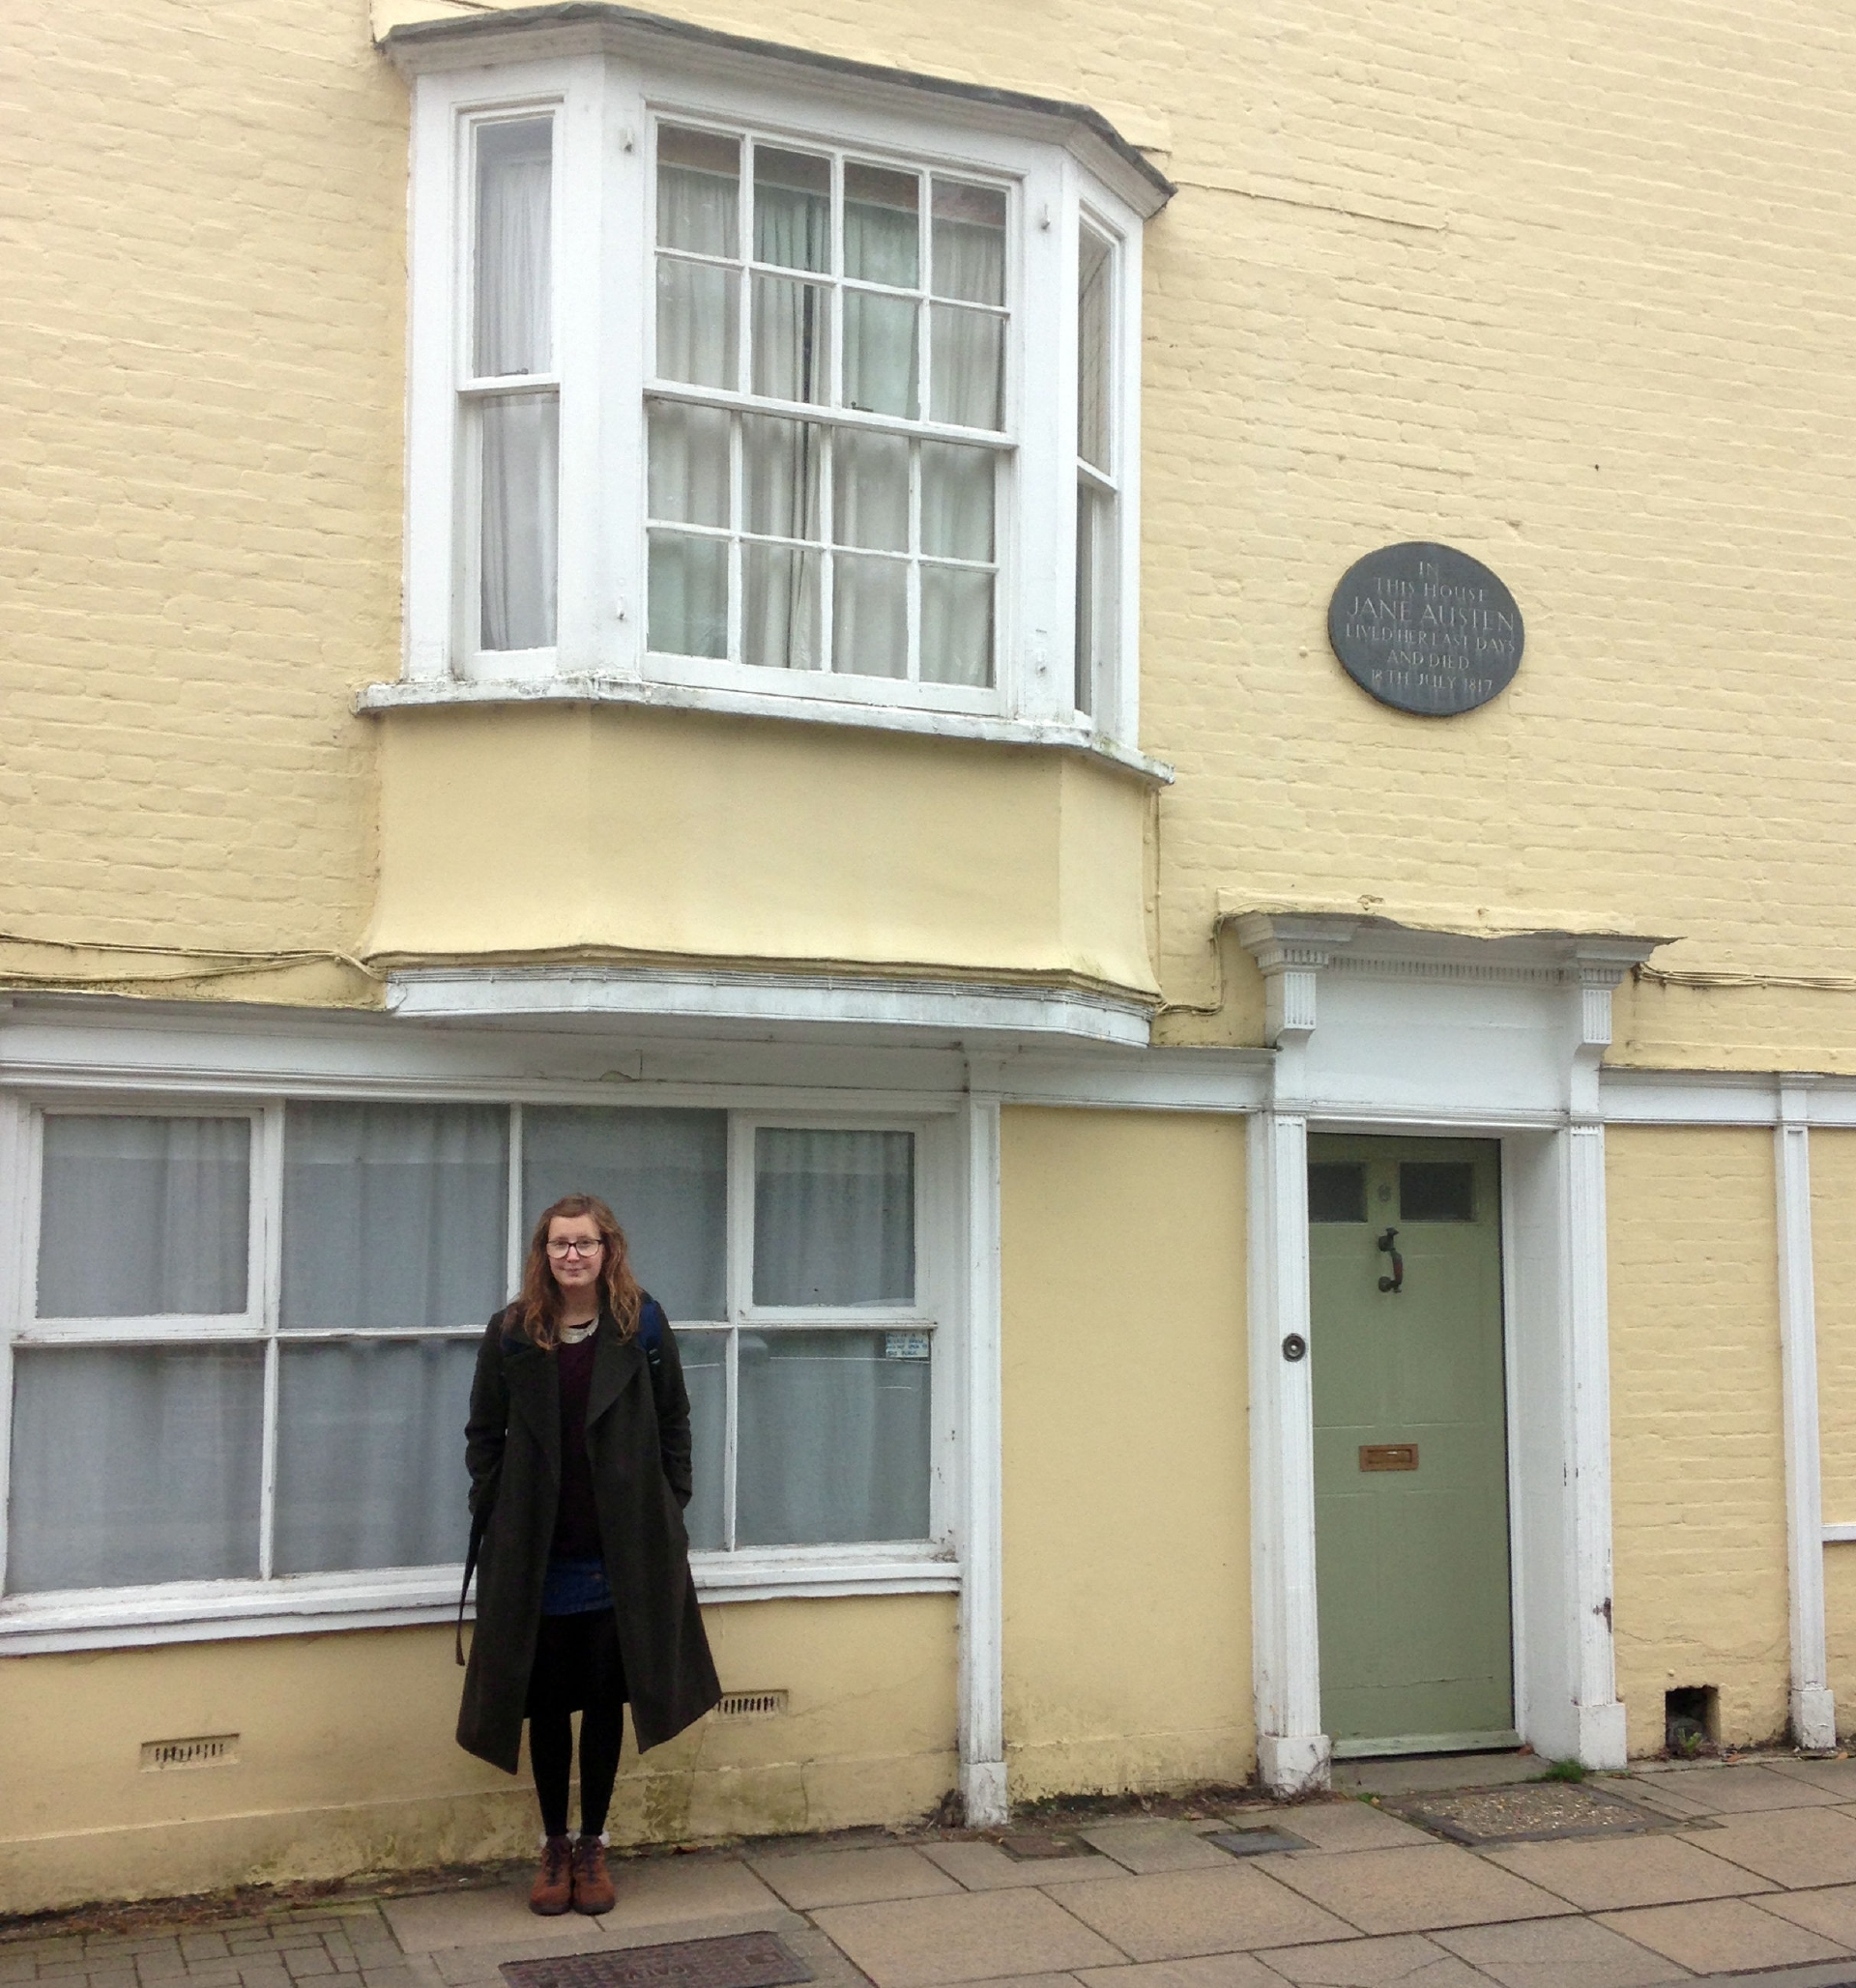 Ella outside Jane Austen's house.